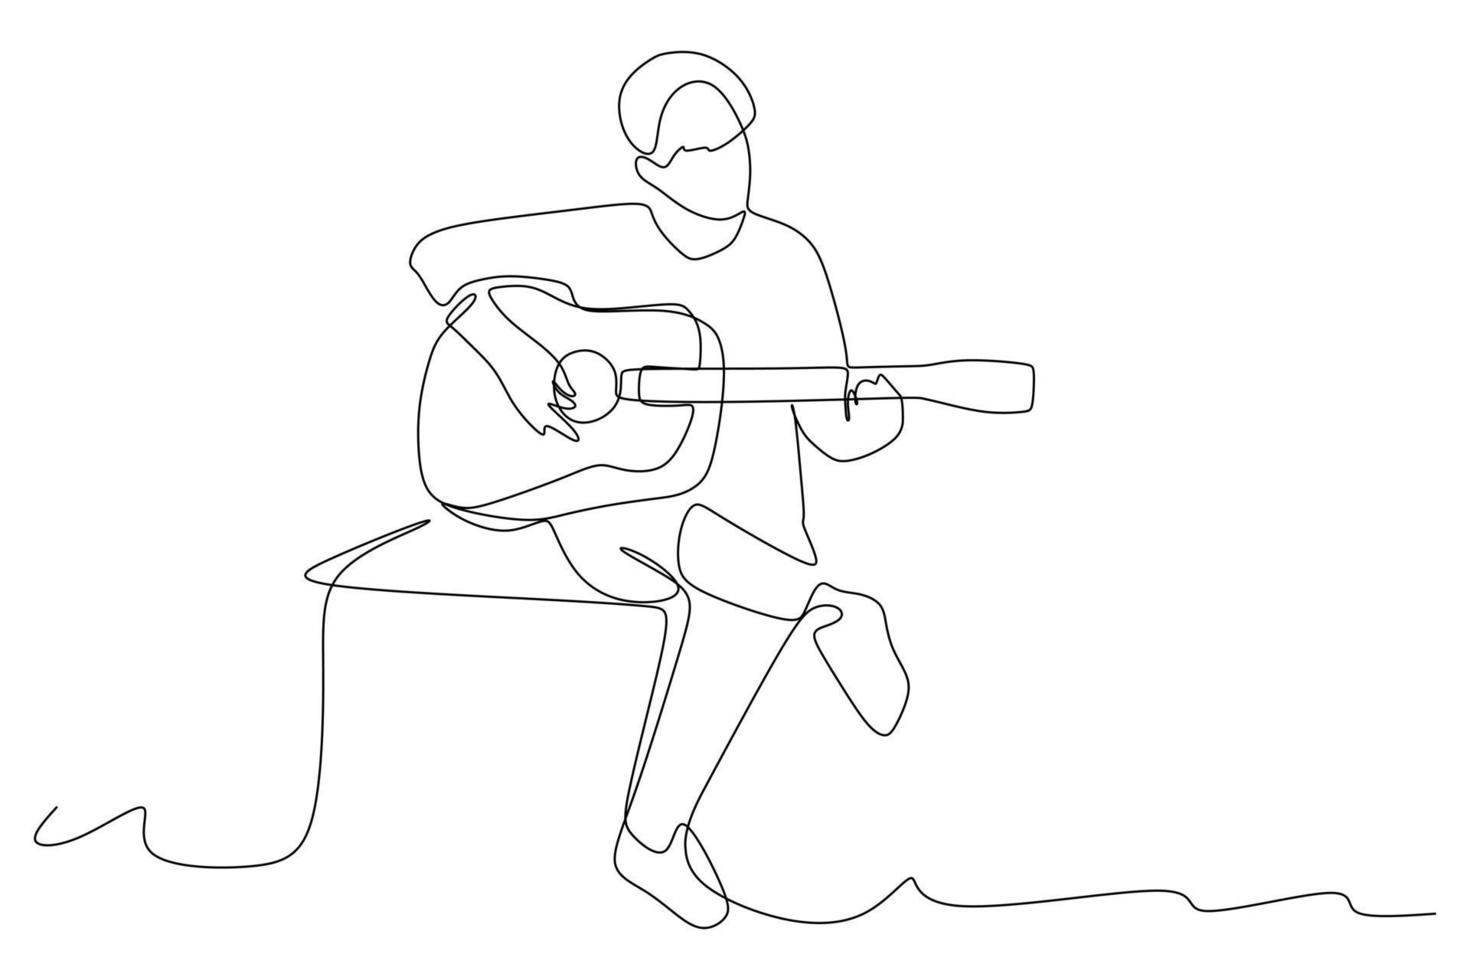 dessin en ligne continu du guitariste assis jouant de la guitare acoustique. concept de performance d'artiste musicien dynamique illustration vectorielle de dessin graphique à une seule ligne vecteur